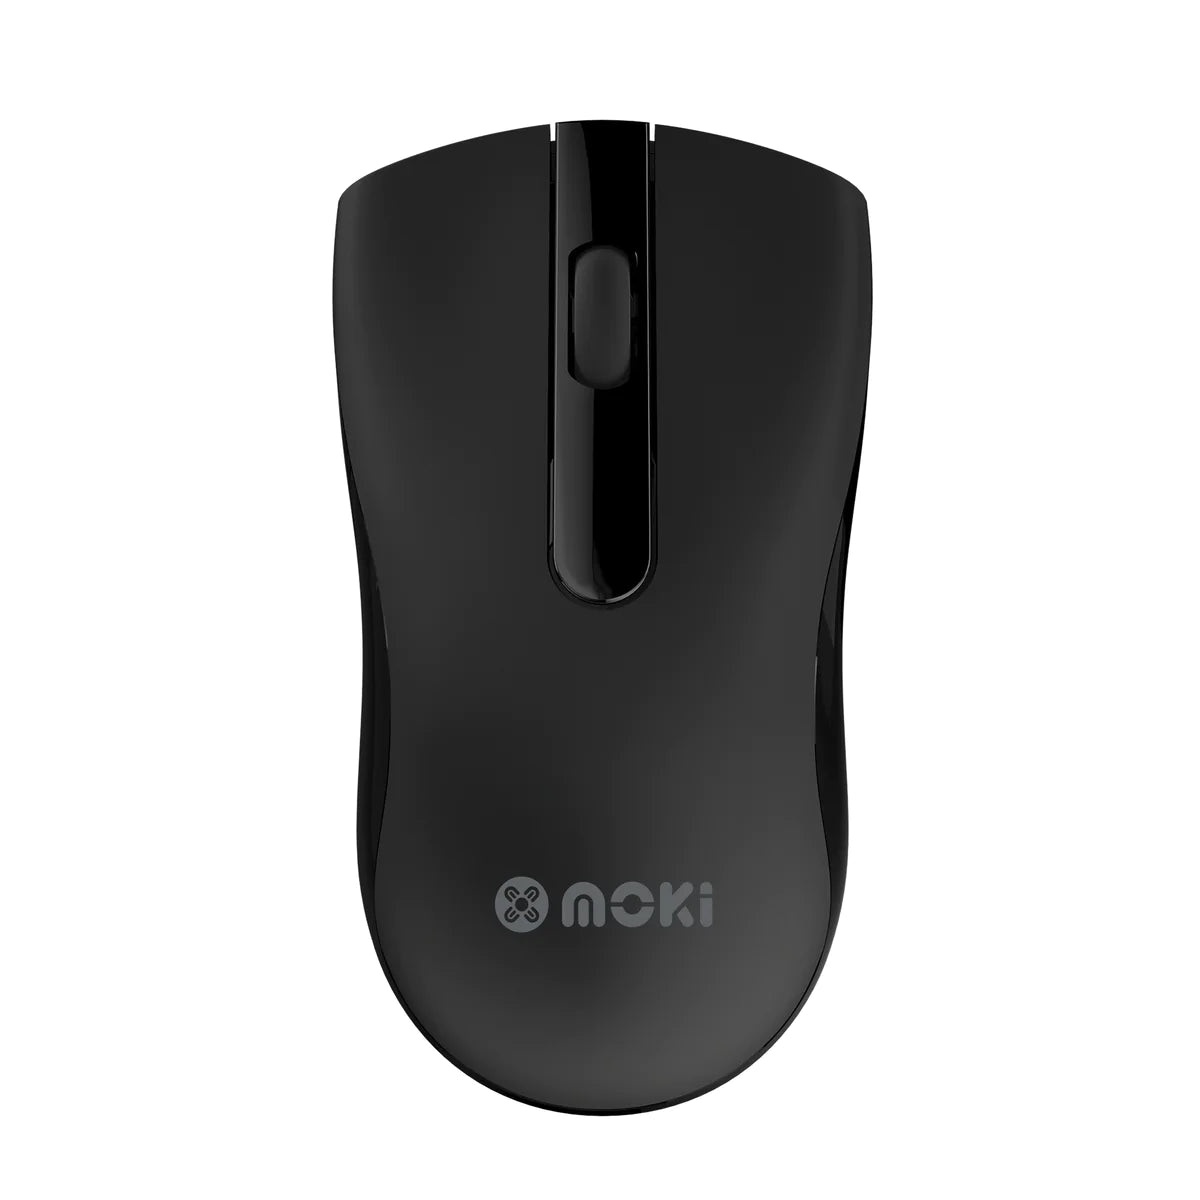 Moki Optical Mouse Wireless USB